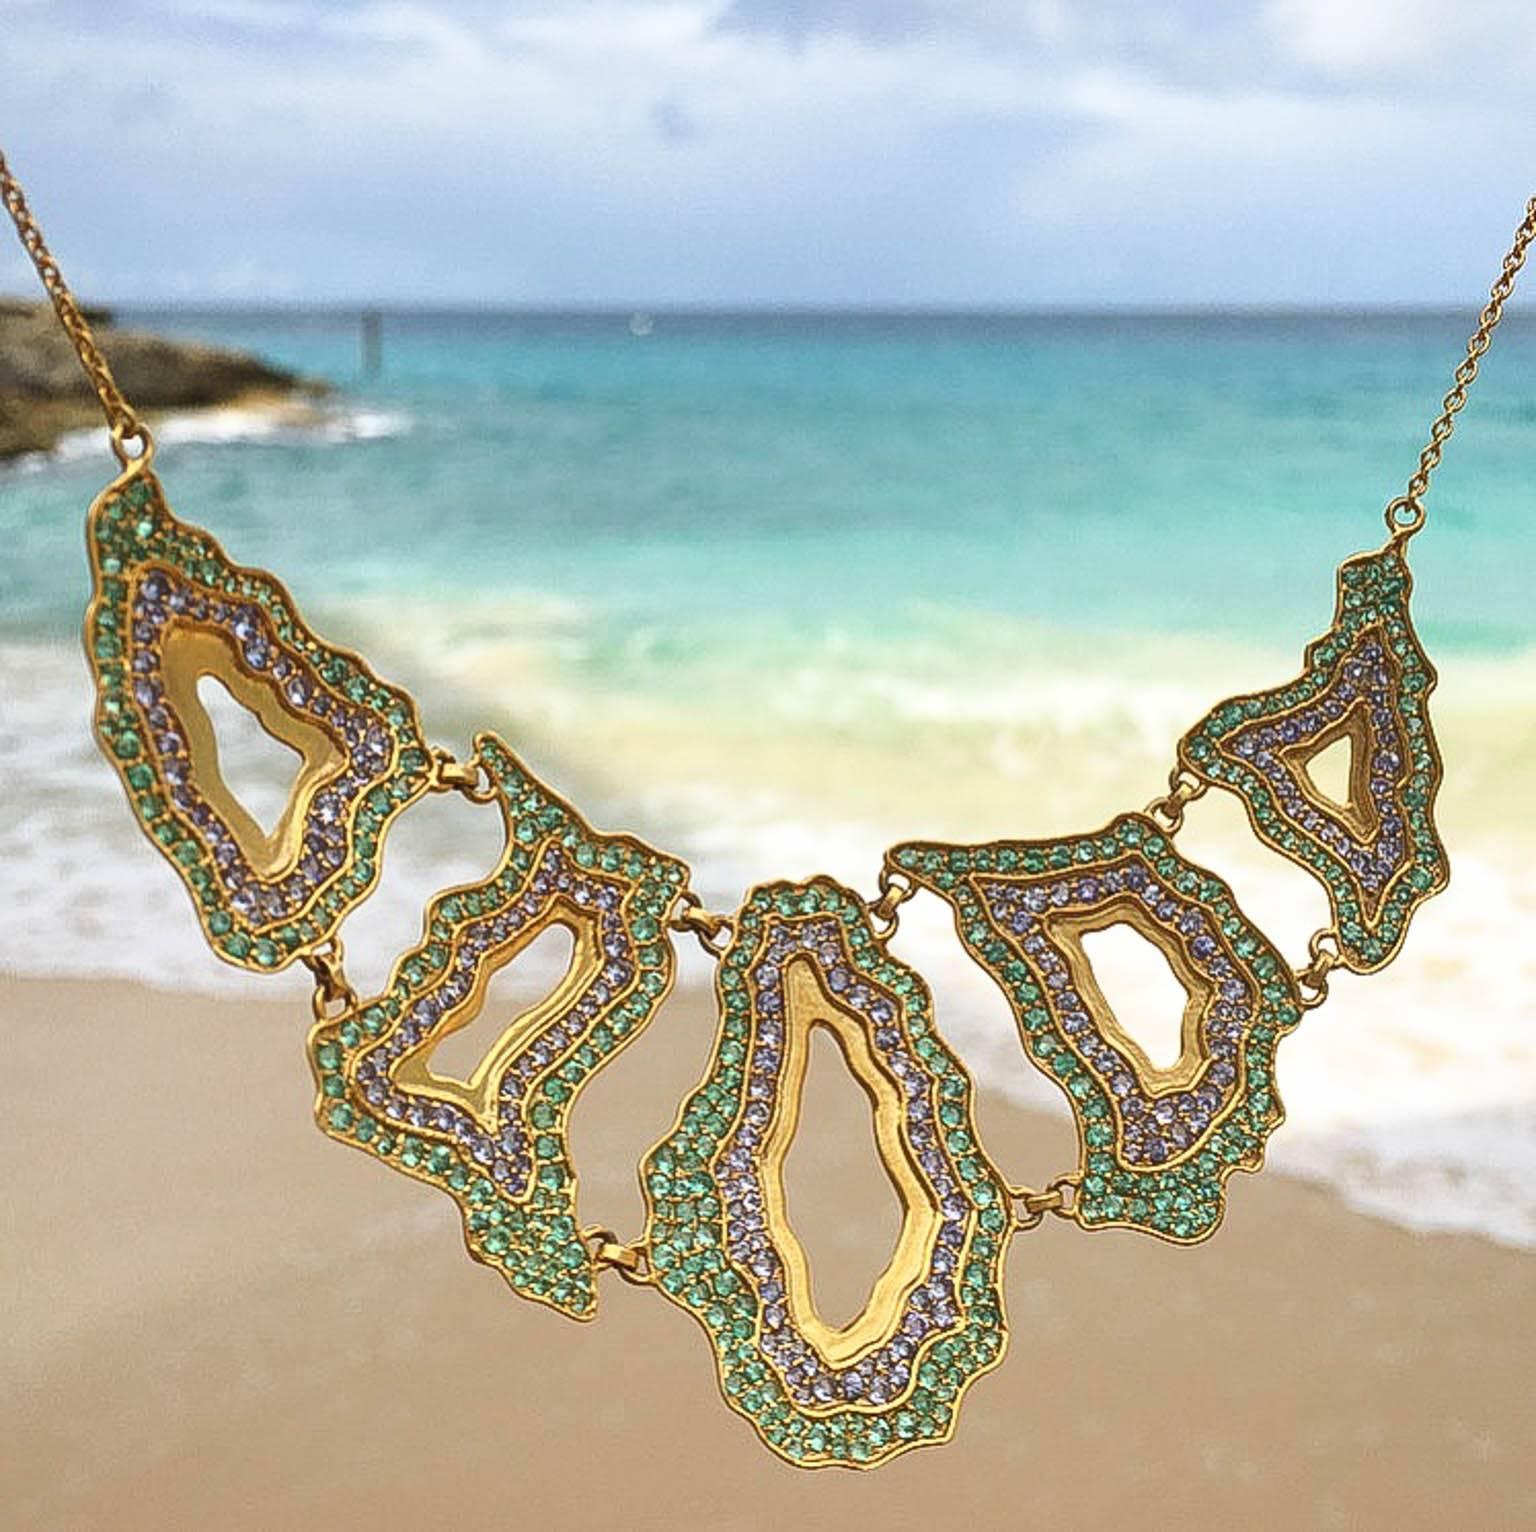 Diese farbenfrohe Smaragd- und Tansanit-Halskette ahmt die Muster und Formen natürlicher Geoden und Achate nach, ist jedoch vollständig aus Edelsteinen und dem für Lauren Harper typischen 18-karätigen Mattgold gefertigt. Jede der 5 Komponenten liegt